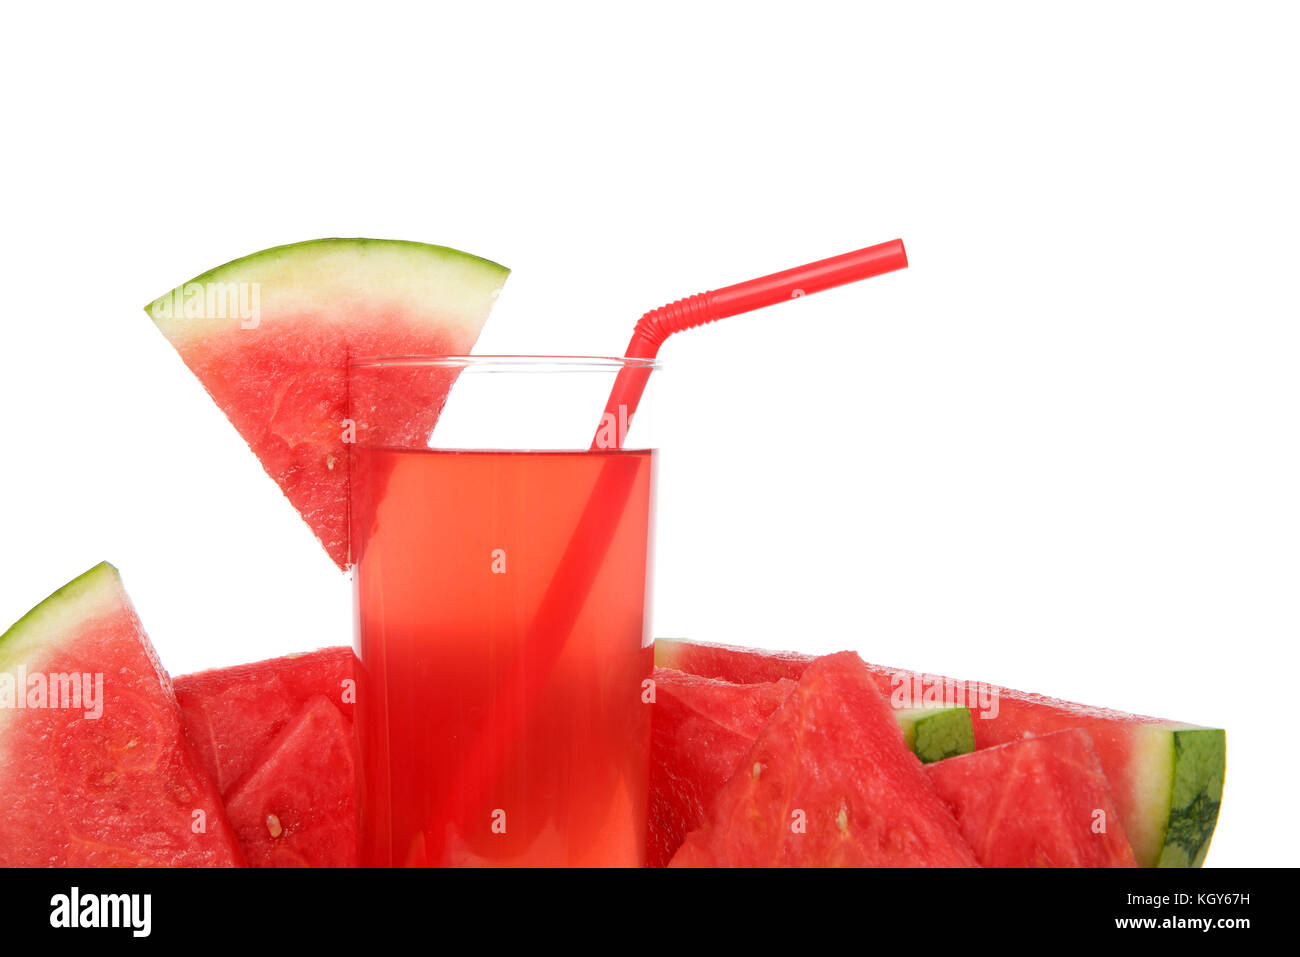 Chiusura del bicchiere di limonata anguria circondato da frutta rossa di paglia, fetta di cocomero sul lato della coppa, isolati su sfondo bianco. Foto Stock